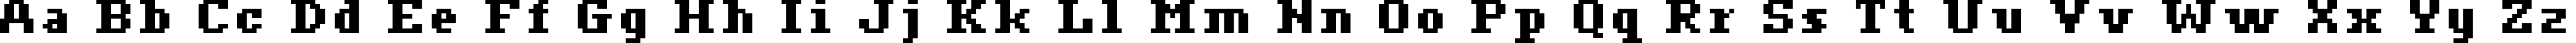 Пример написания английского алфавита шрифтом ceriph 07_66